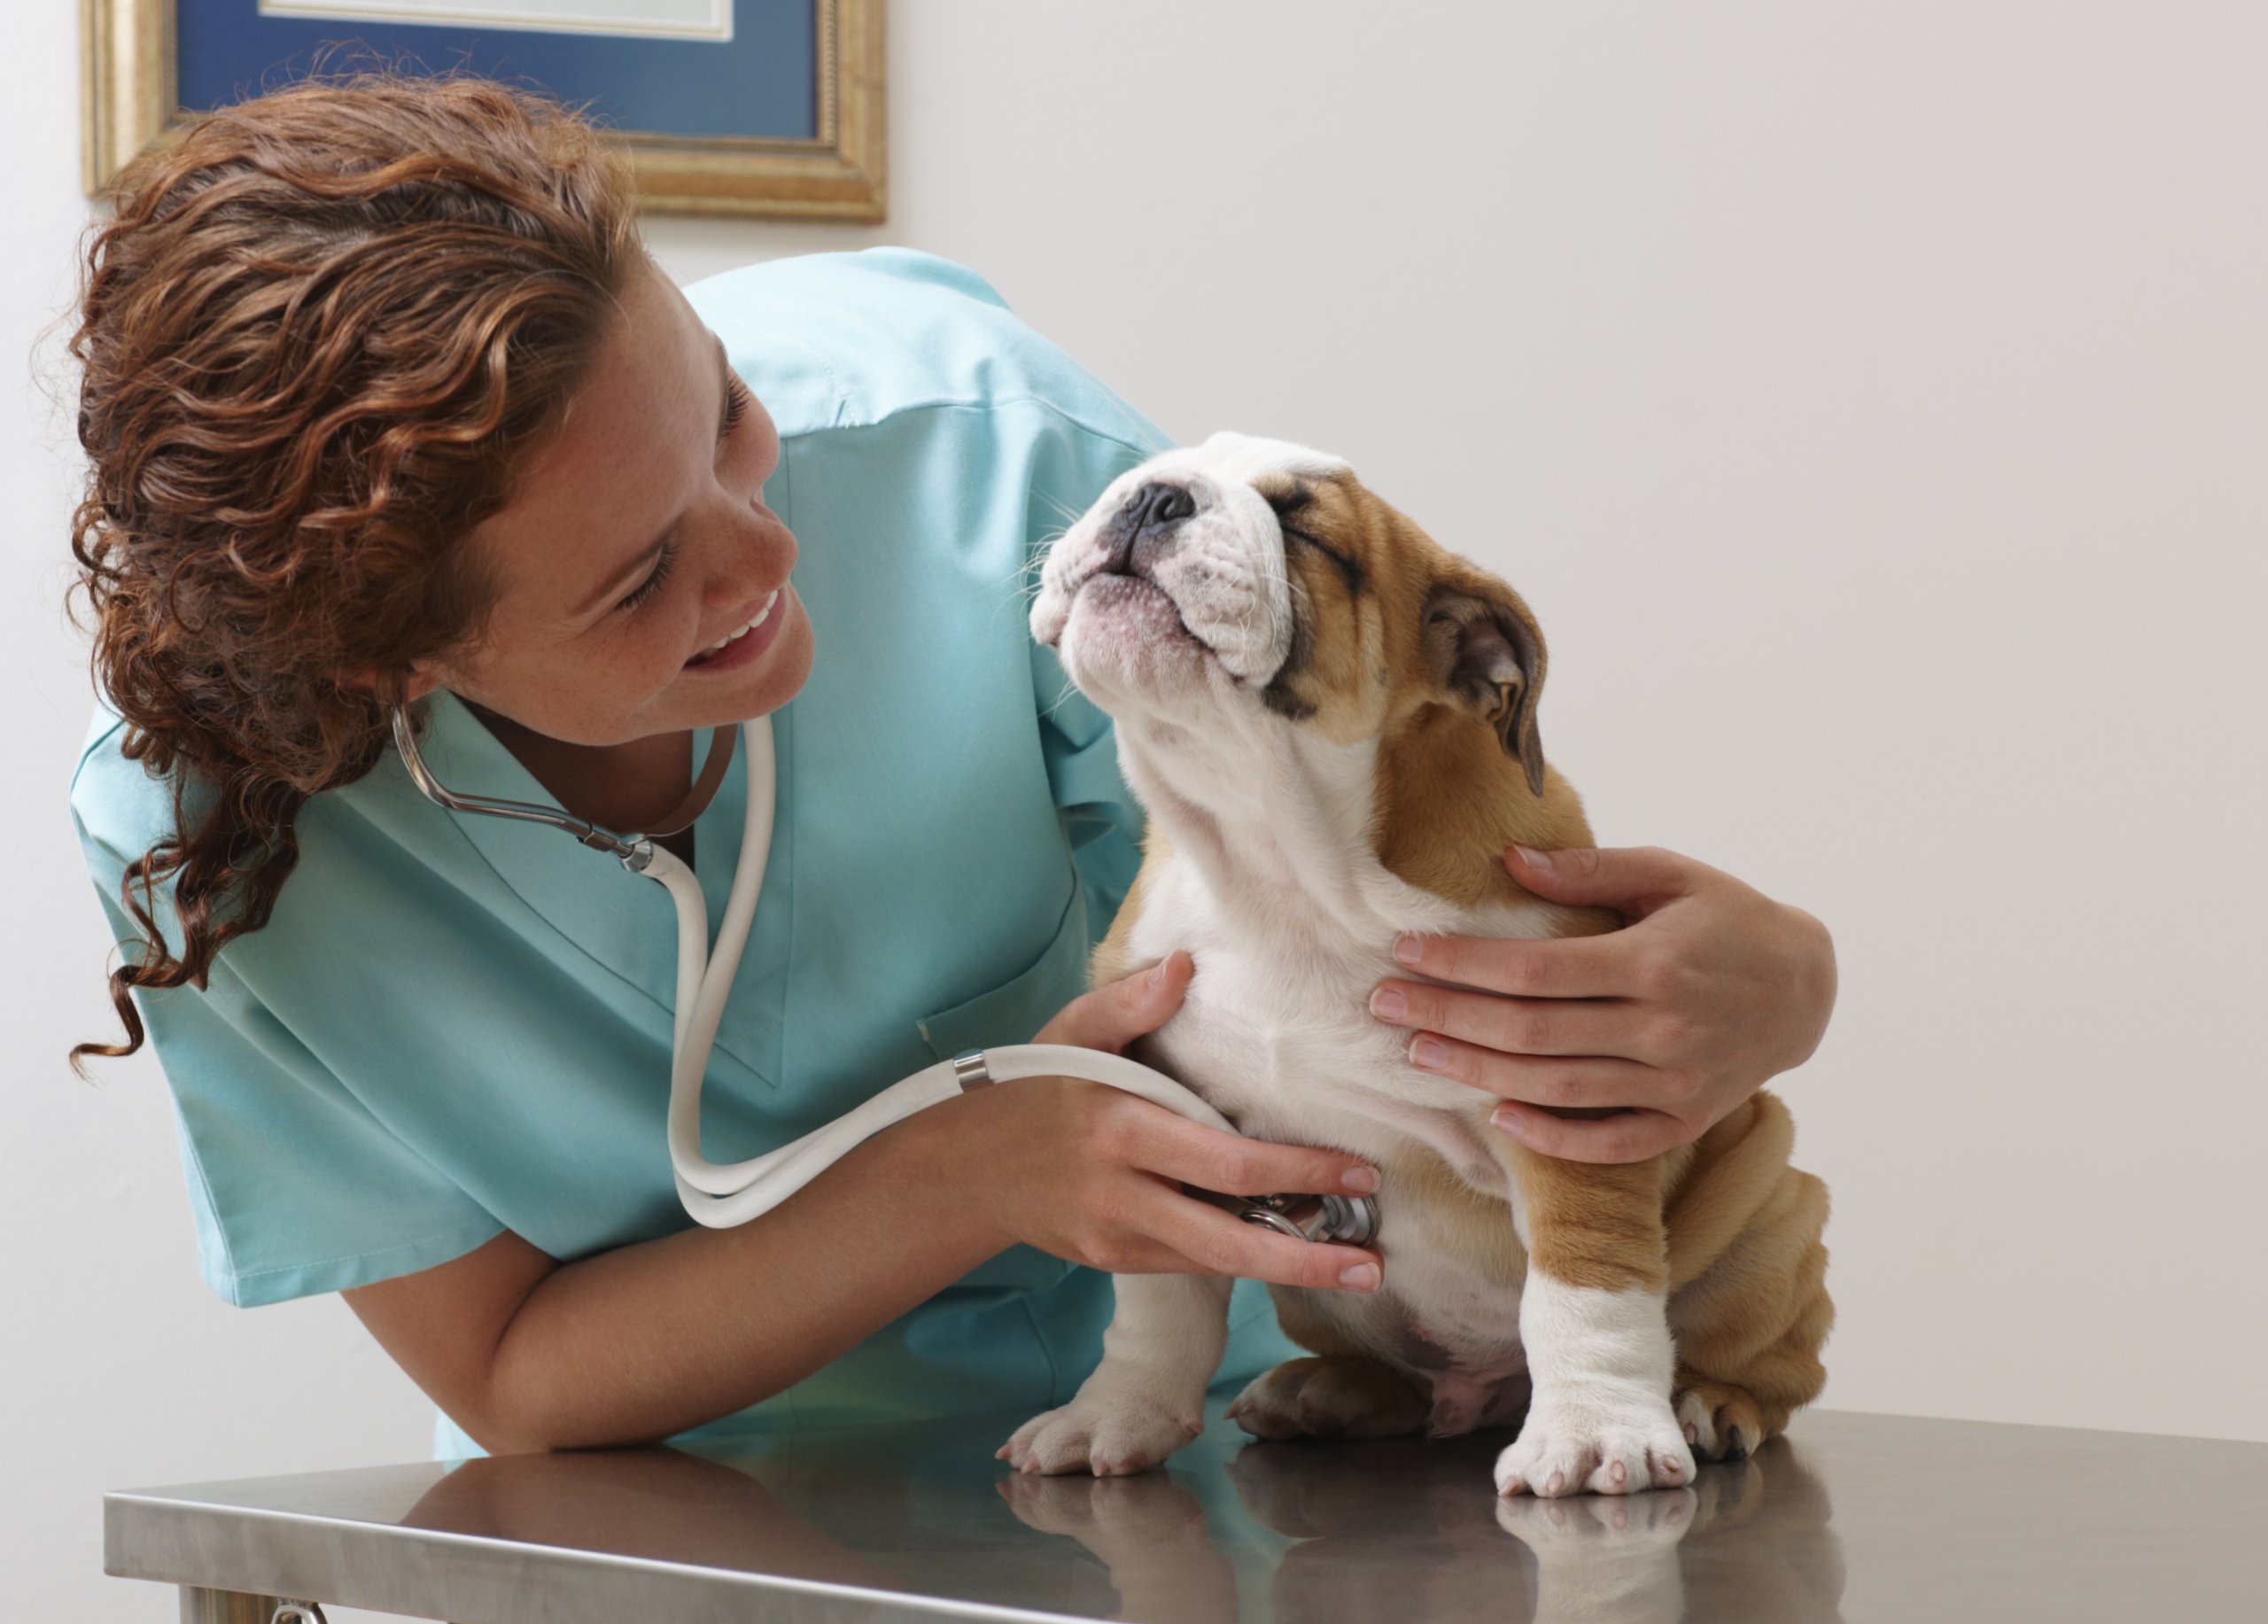 A vet holding a dog